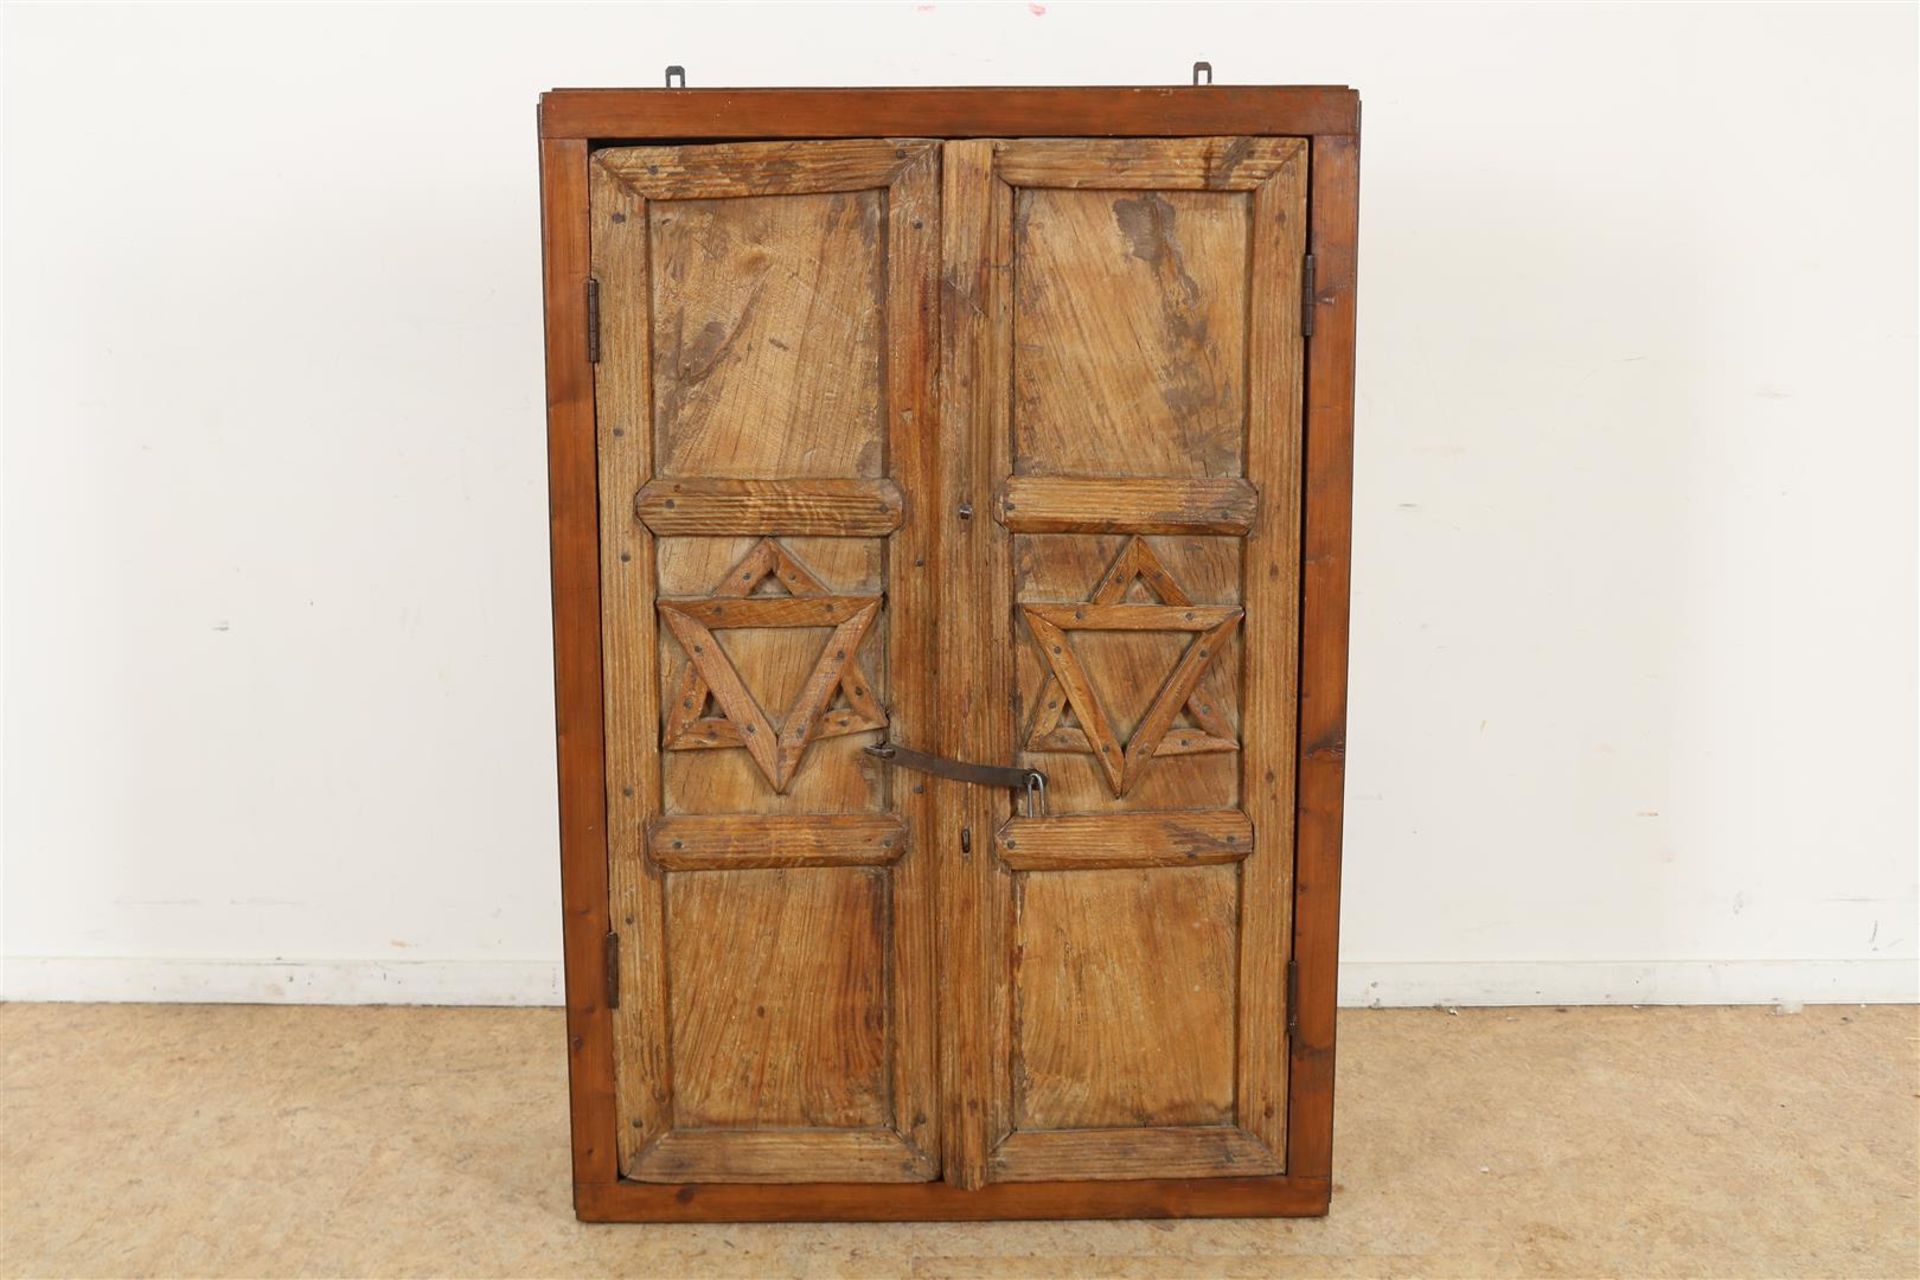 Oak veneered hanging cabinet with 2 teak doors with relief of "Jewish" Star of David, h. 112, w. 77,